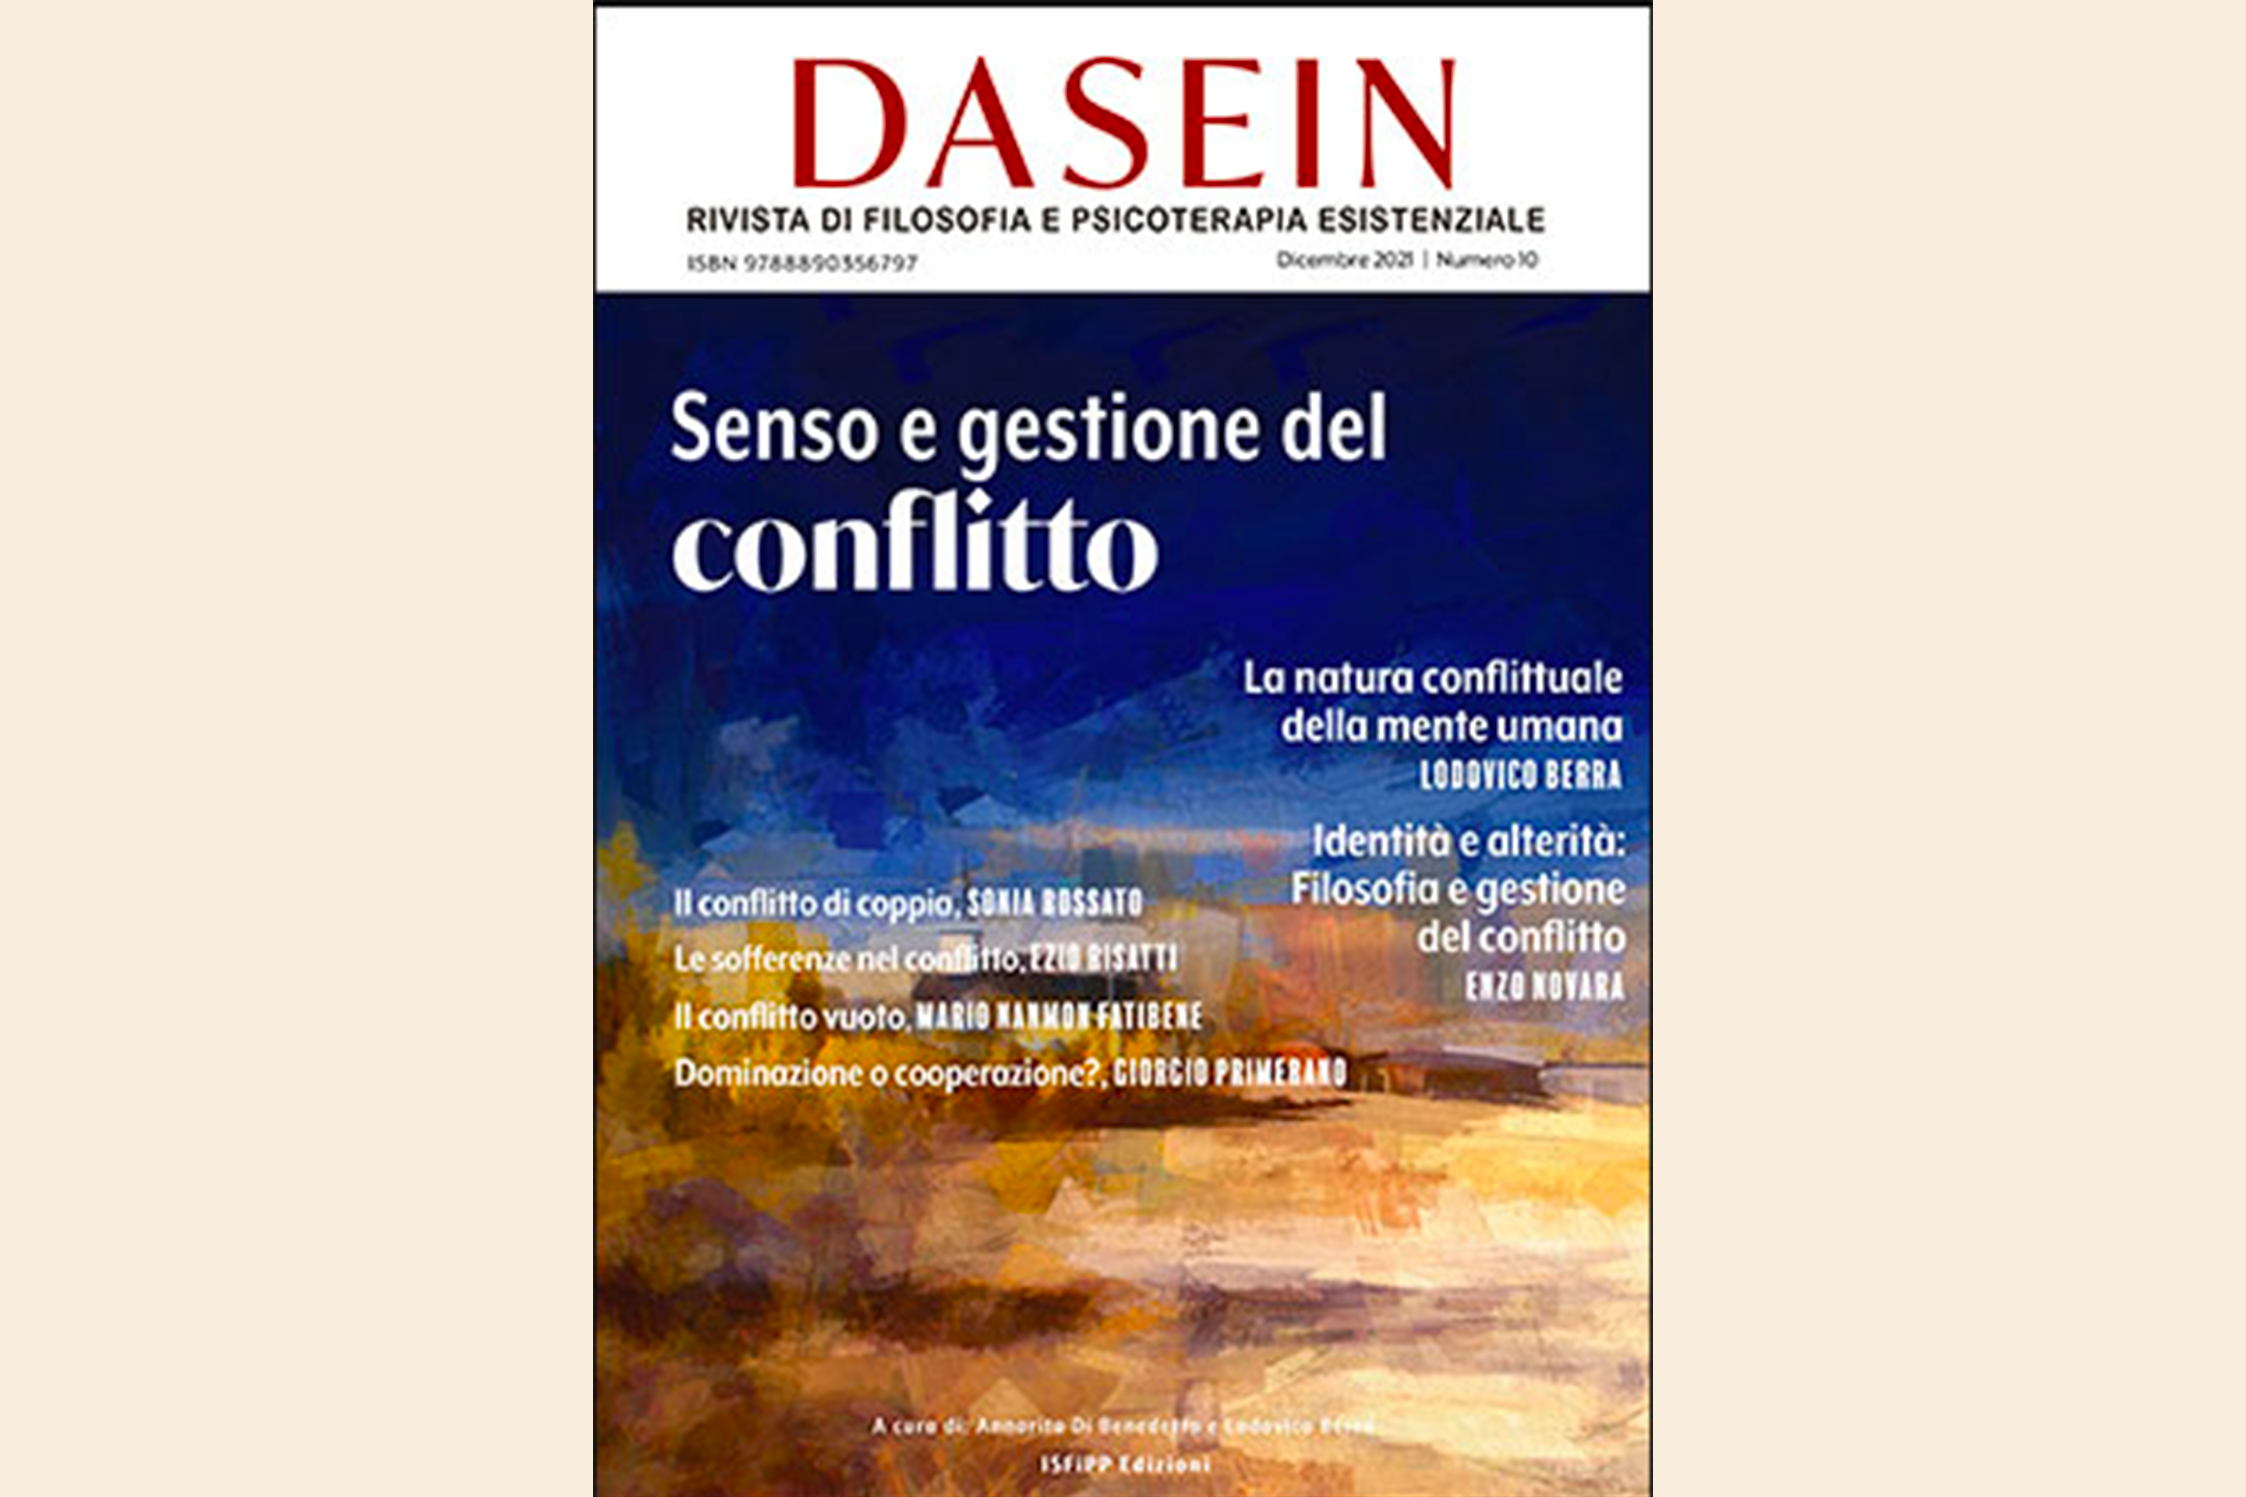 Dasein. Senso e gestione del conflitto. Rivista di Filosofia e Psicoterapia esistenziale 